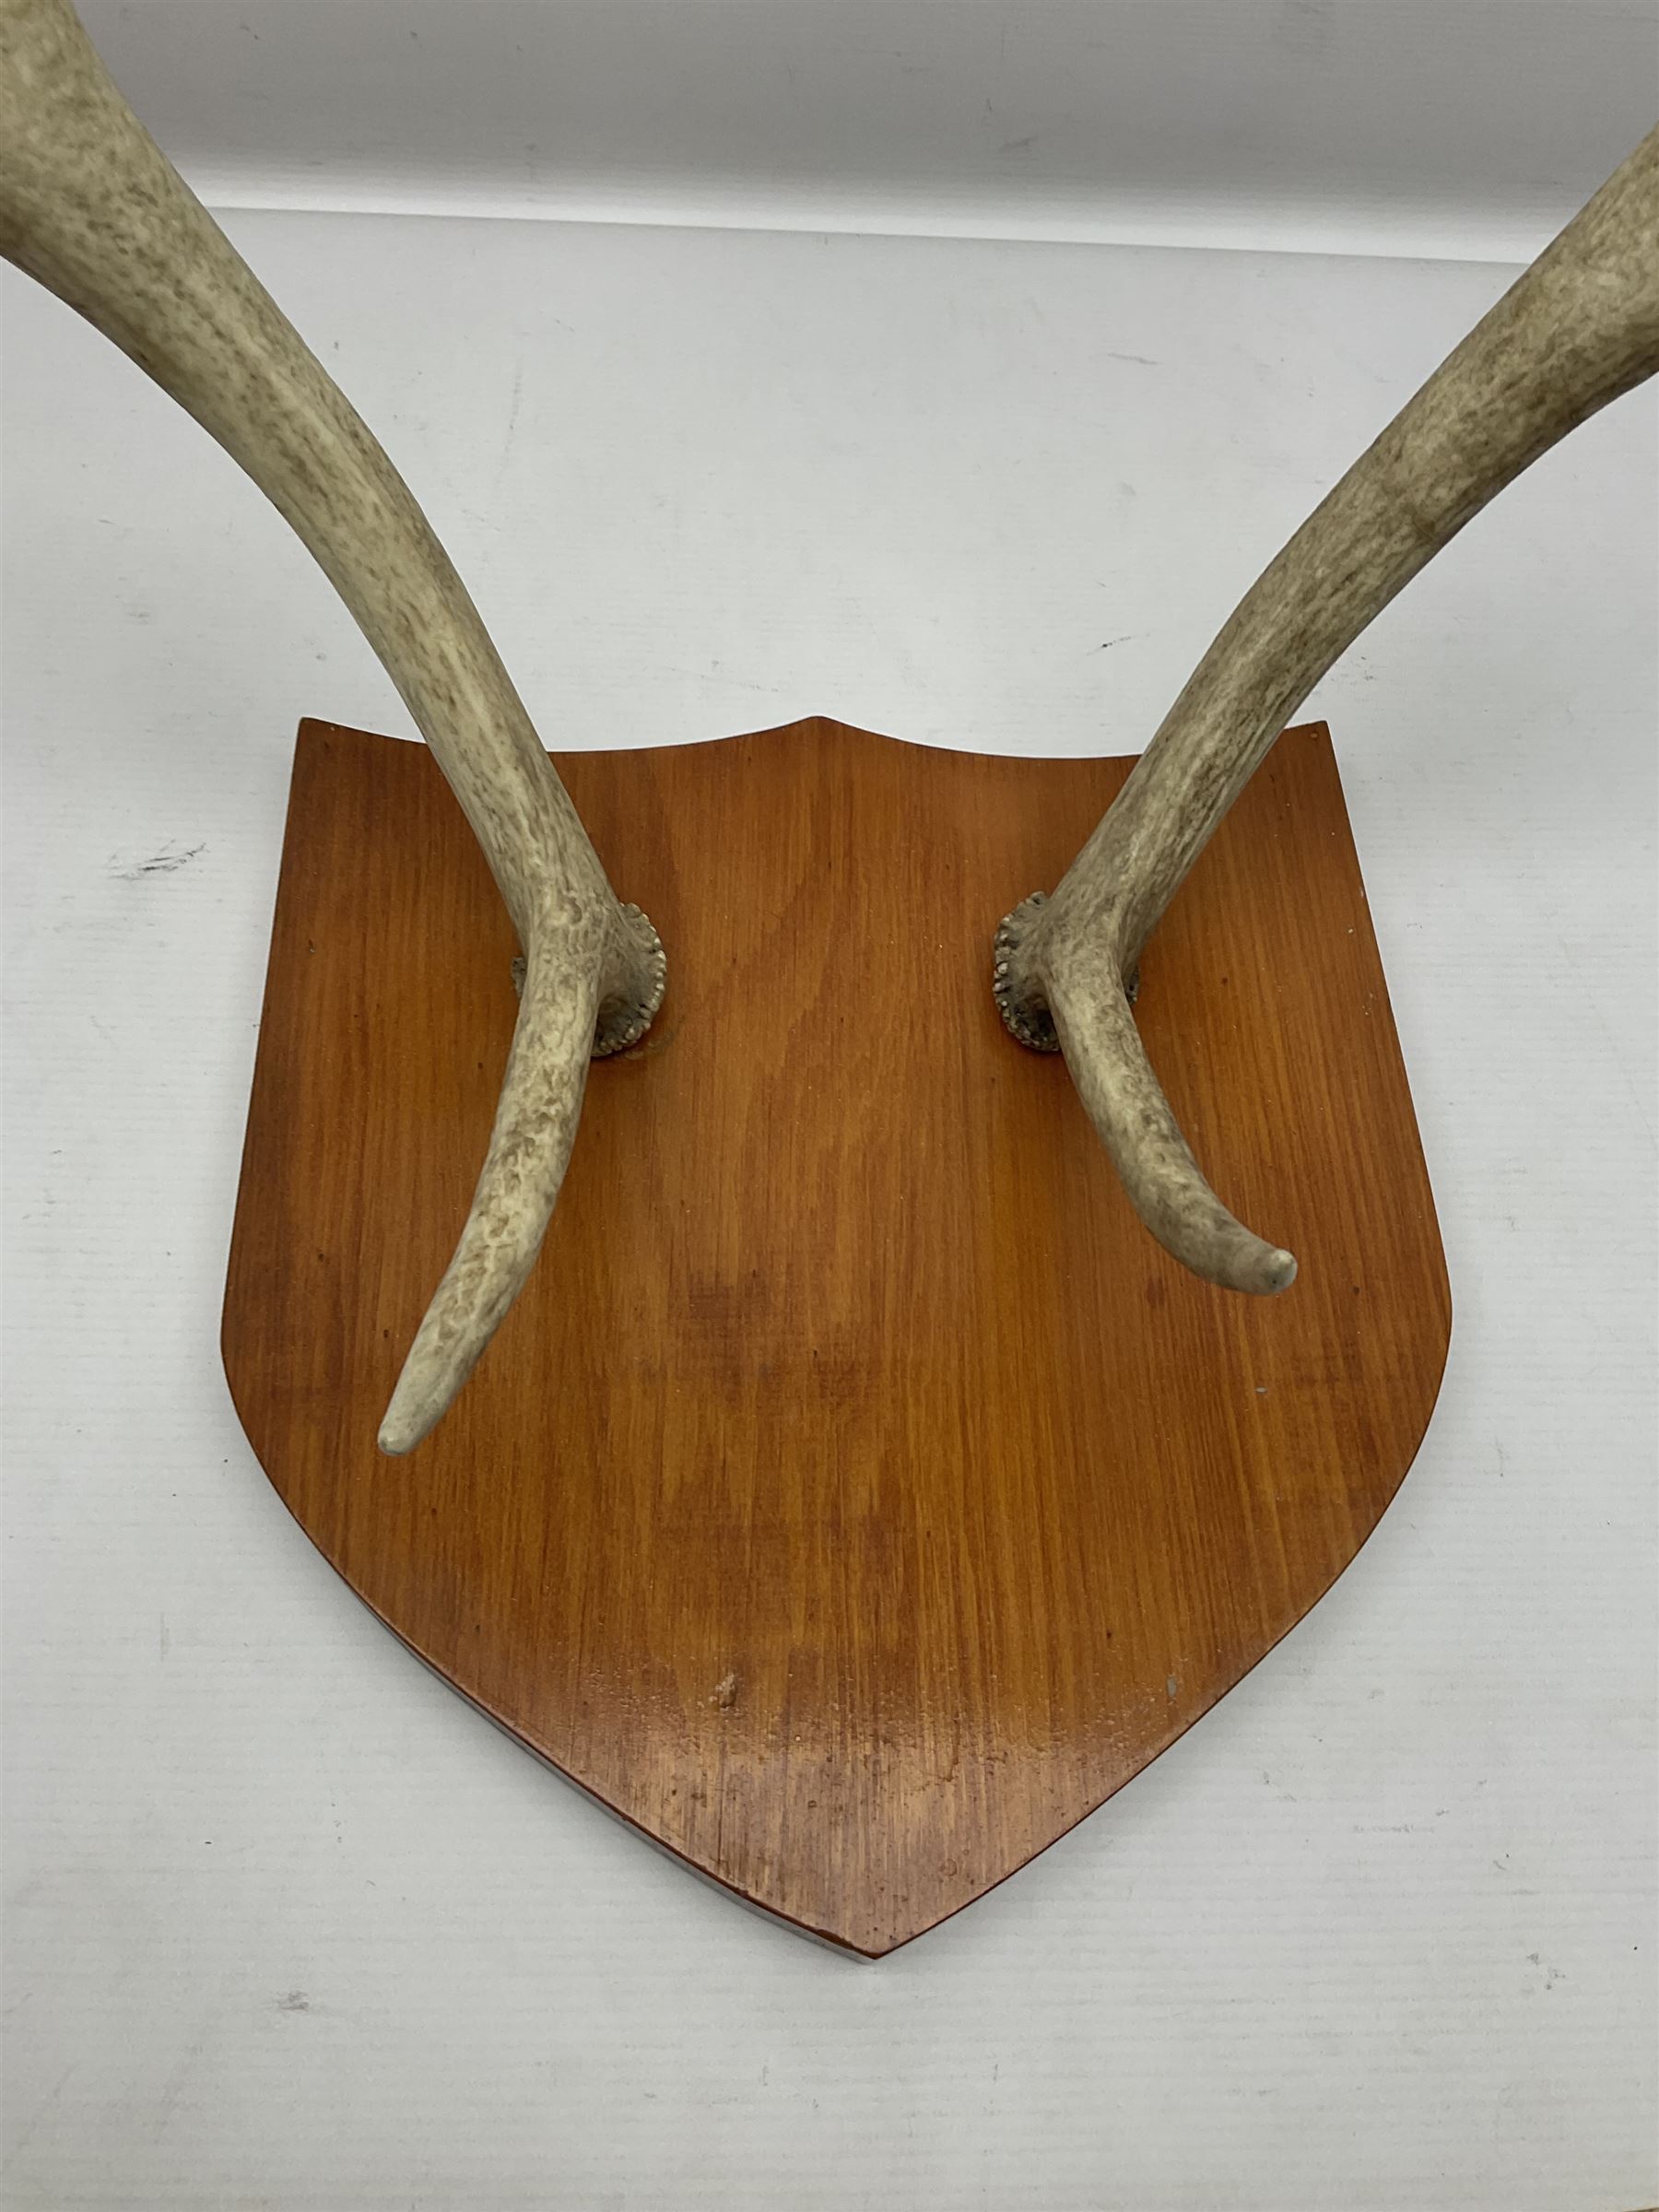 Antlers/Horns: Deer Antlers - Image 2 of 4